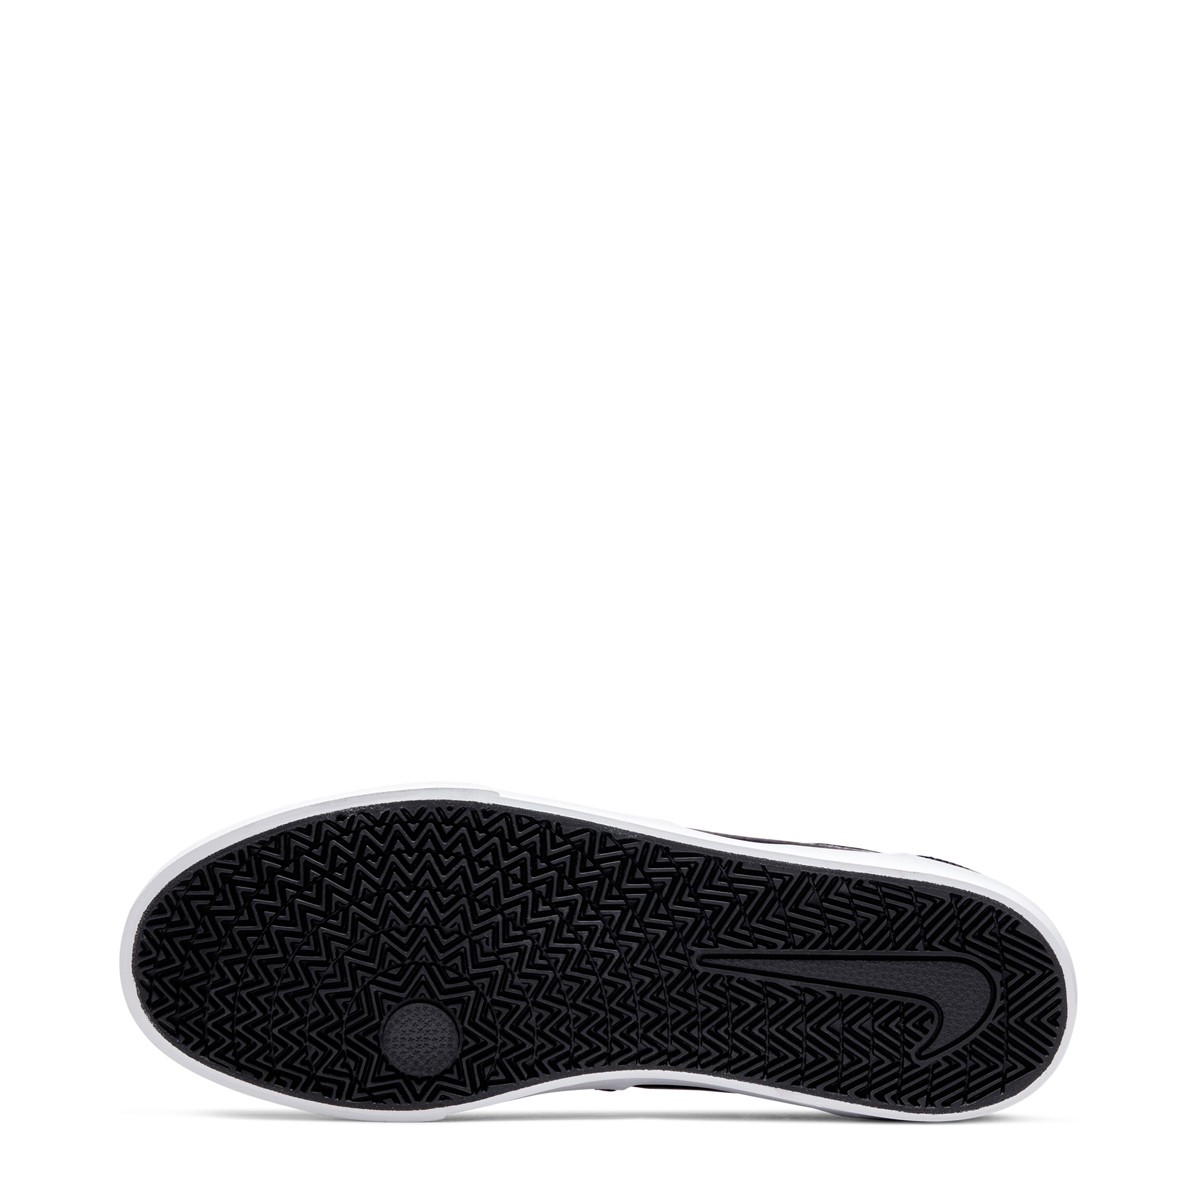 Nike SB Charge Canvas Erkek Ayakkabısı CD6279-008